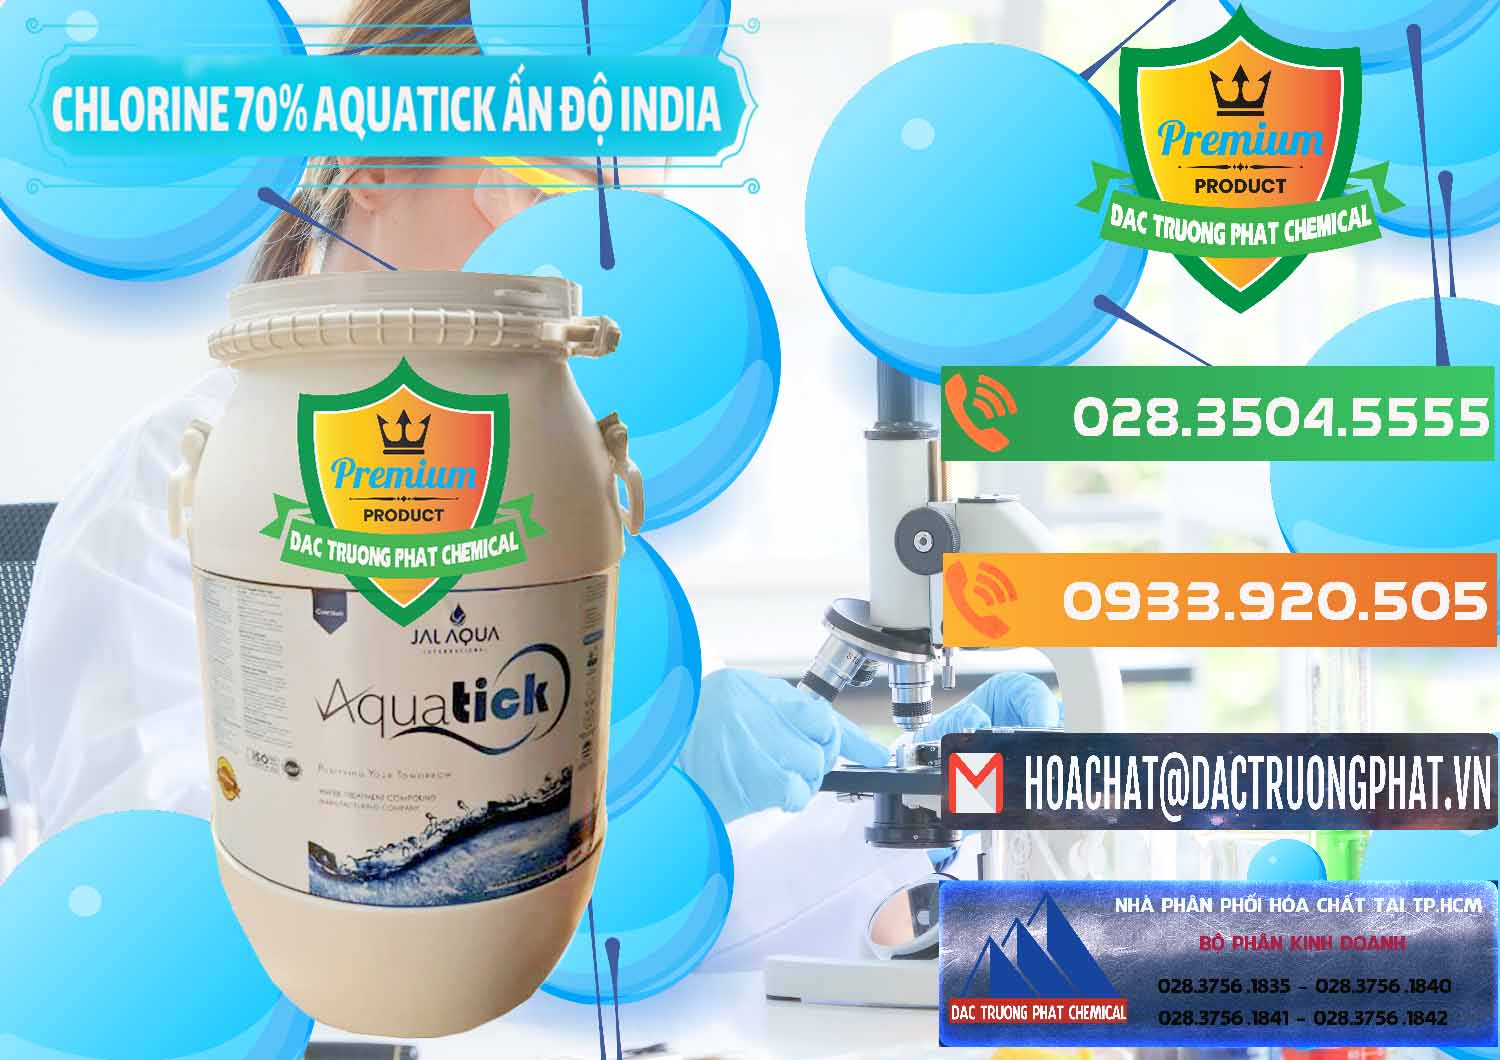 Cty nhập khẩu & bán Chlorine – Clorin 70% Aquatick Jal Aqua Ấn Độ India - 0215 - Cty chuyên bán _ cung cấp hóa chất tại TP.HCM - hoachatxulynuoc.com.vn